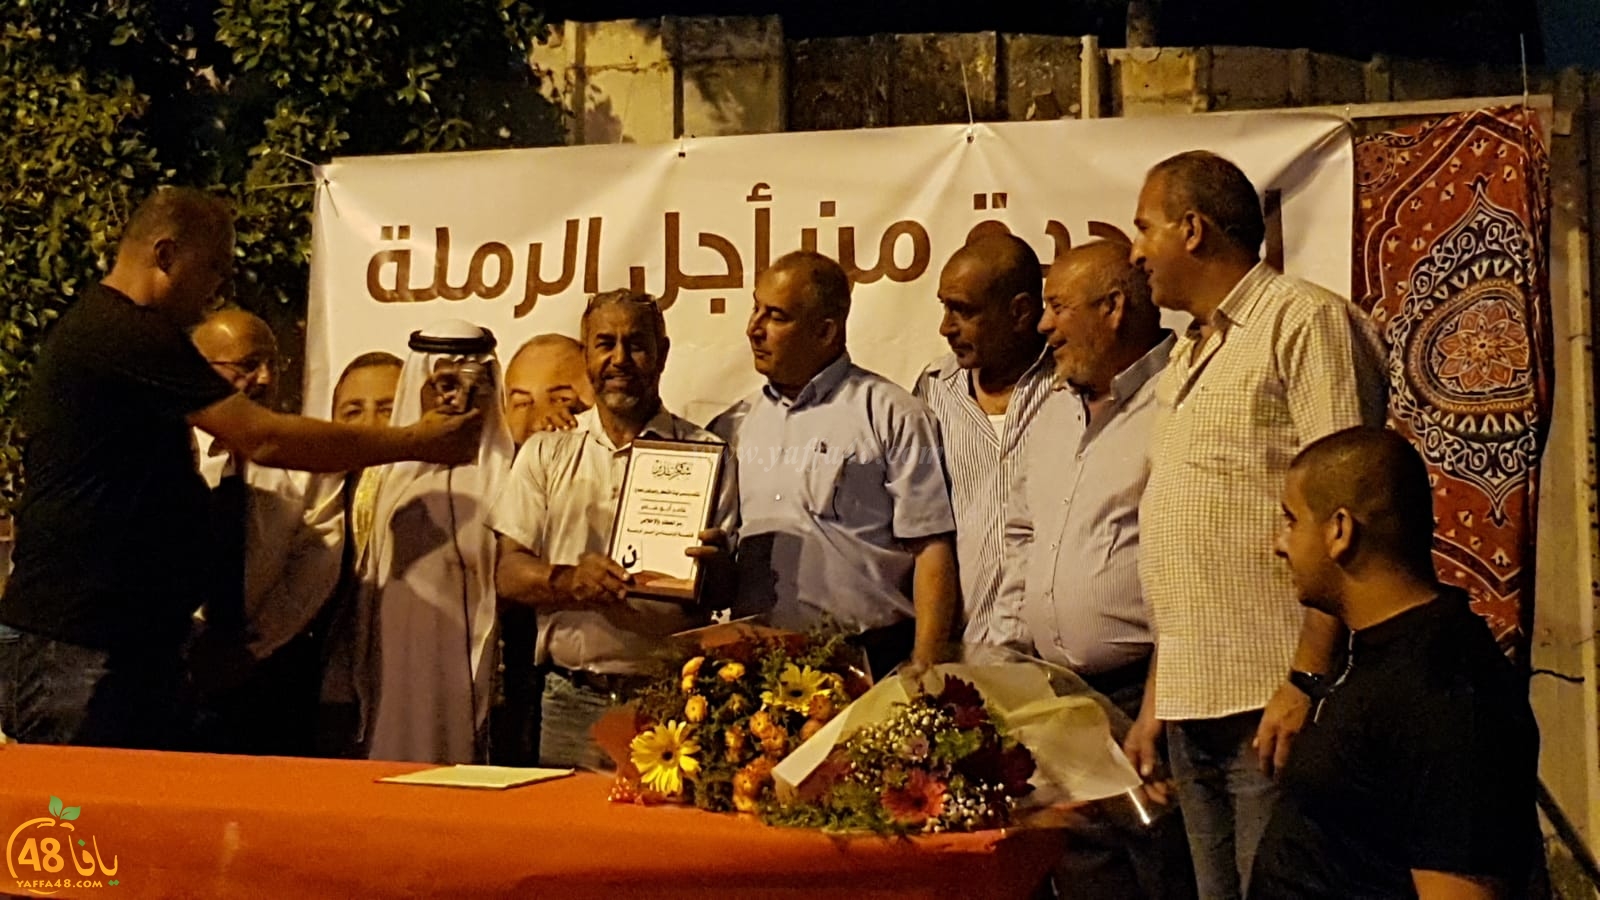 صور: قائمة الوحدة من أجل الرملة تُنظم مهرجاناً انتخابياً في حي الزقازيق بالمدينة